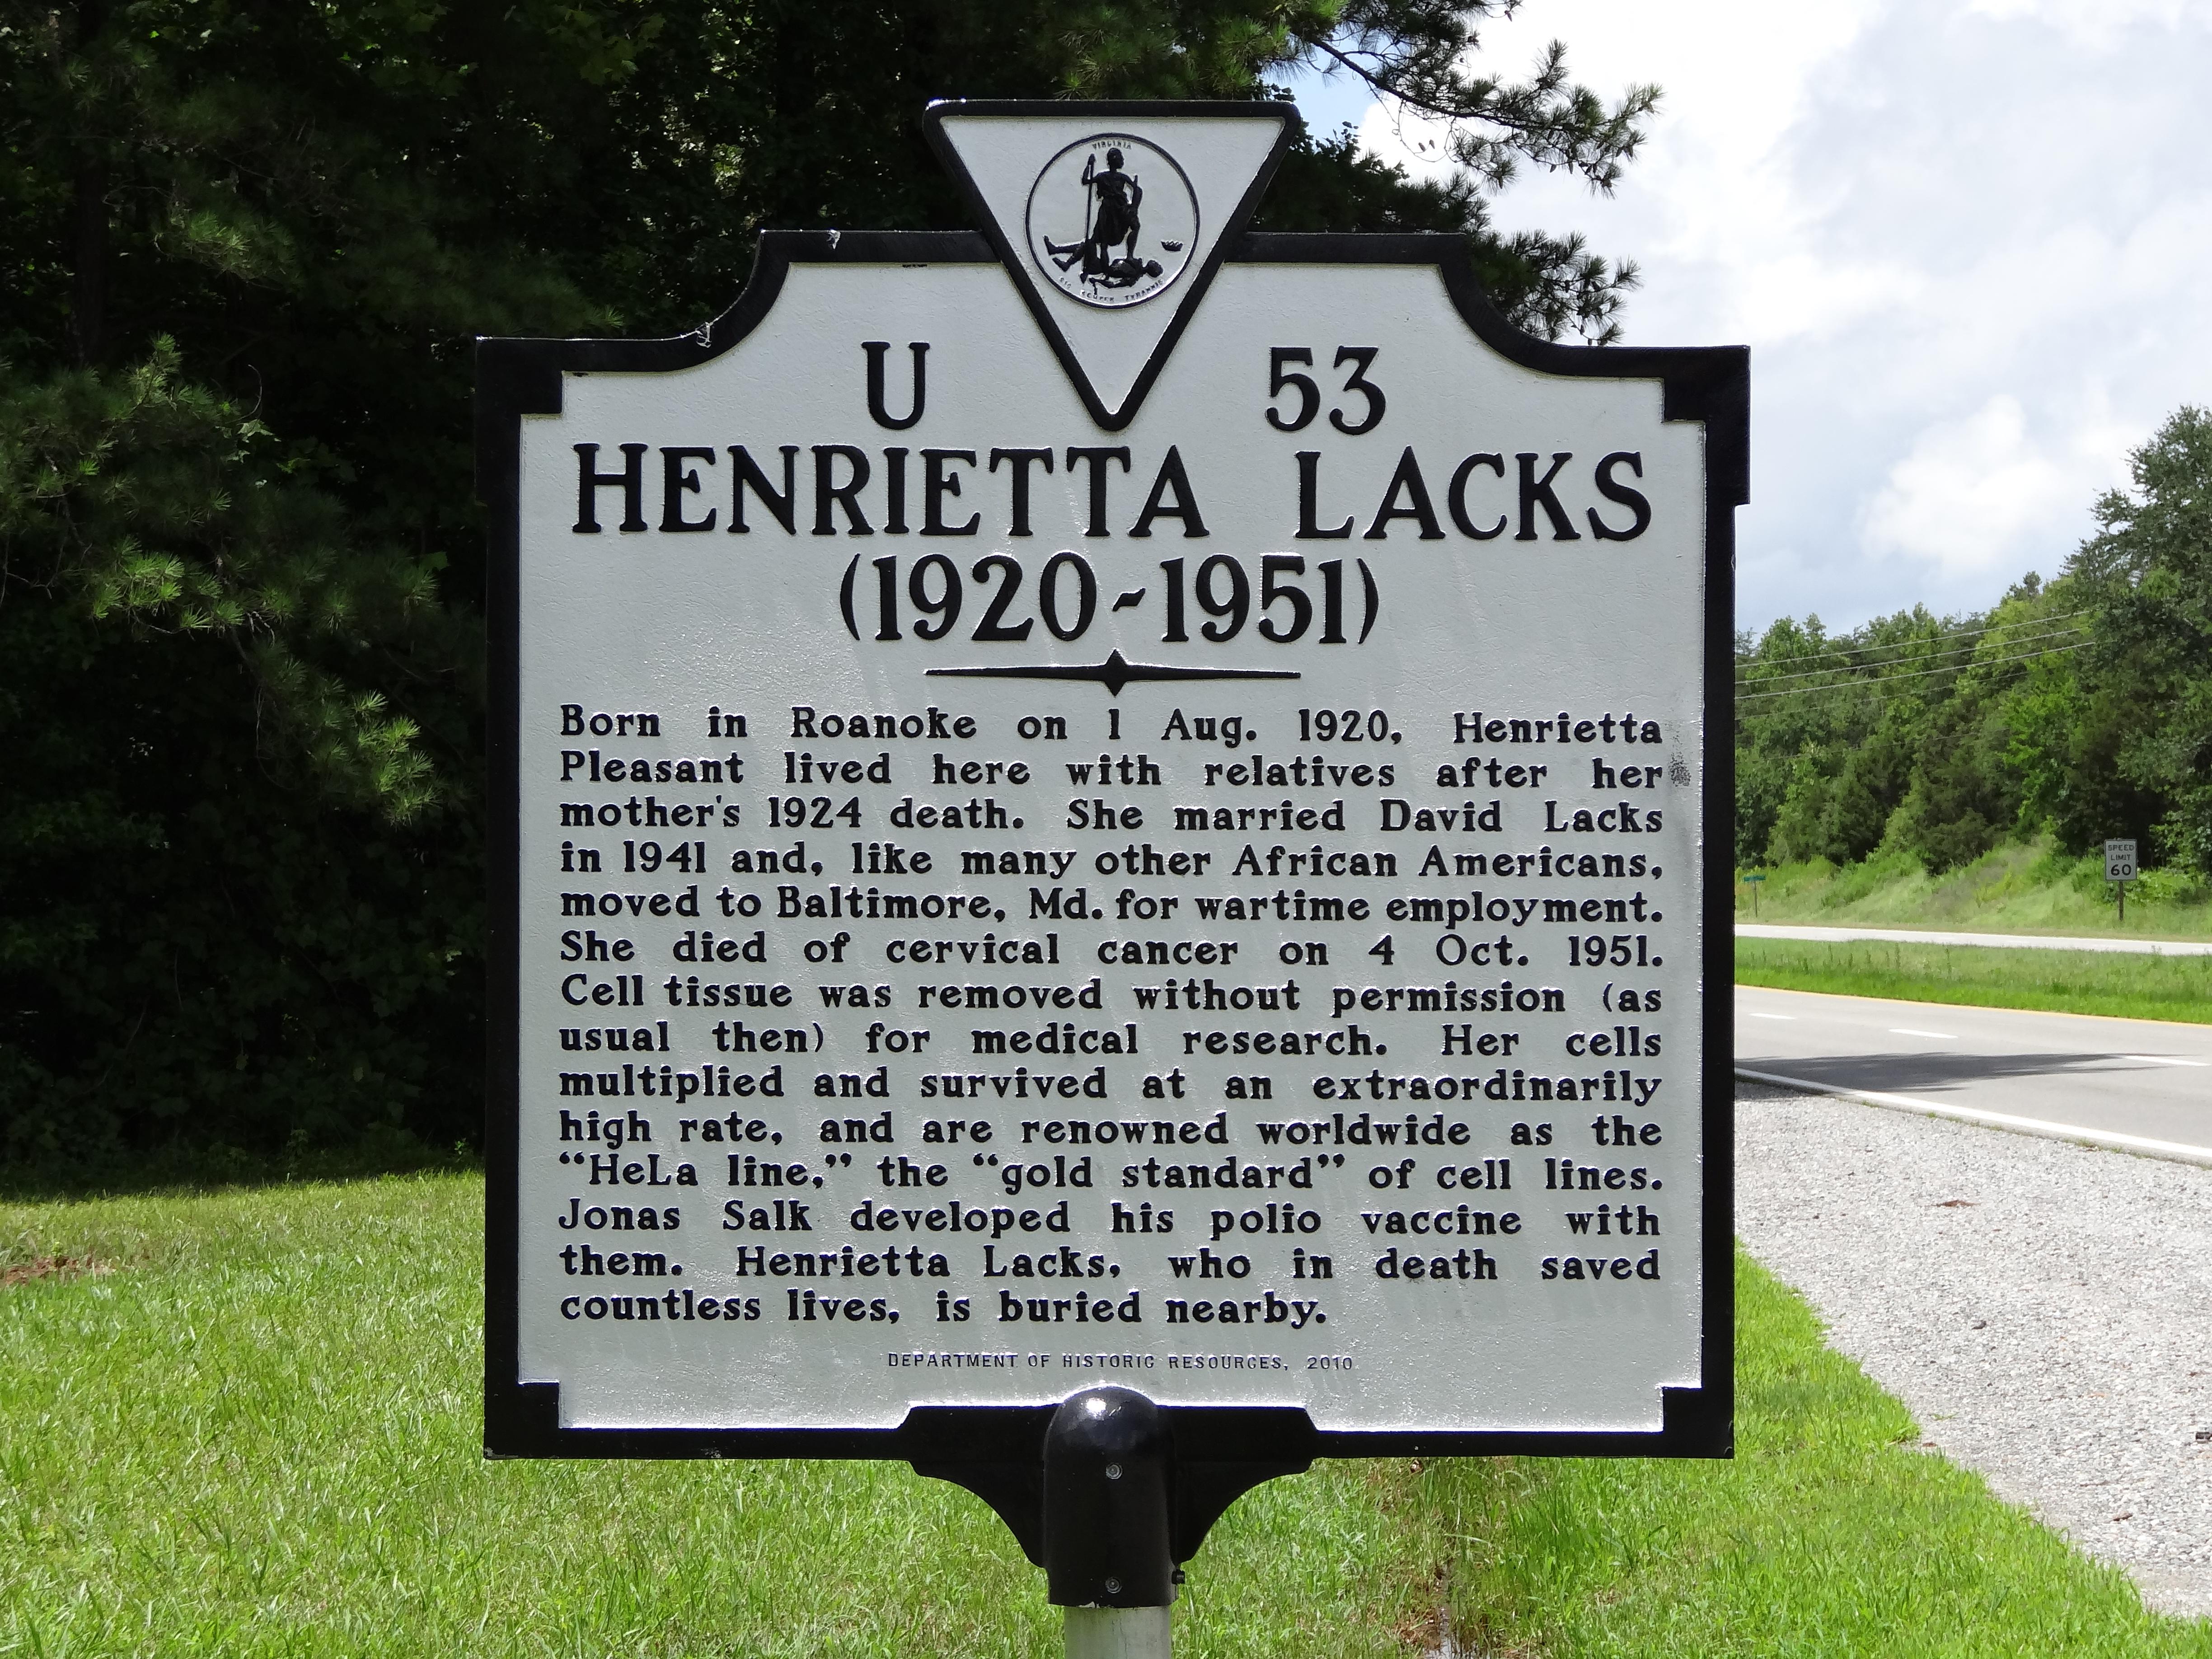 Voici l'étrange histoire d'Henrietta Lacks et de ses cellules immortelles